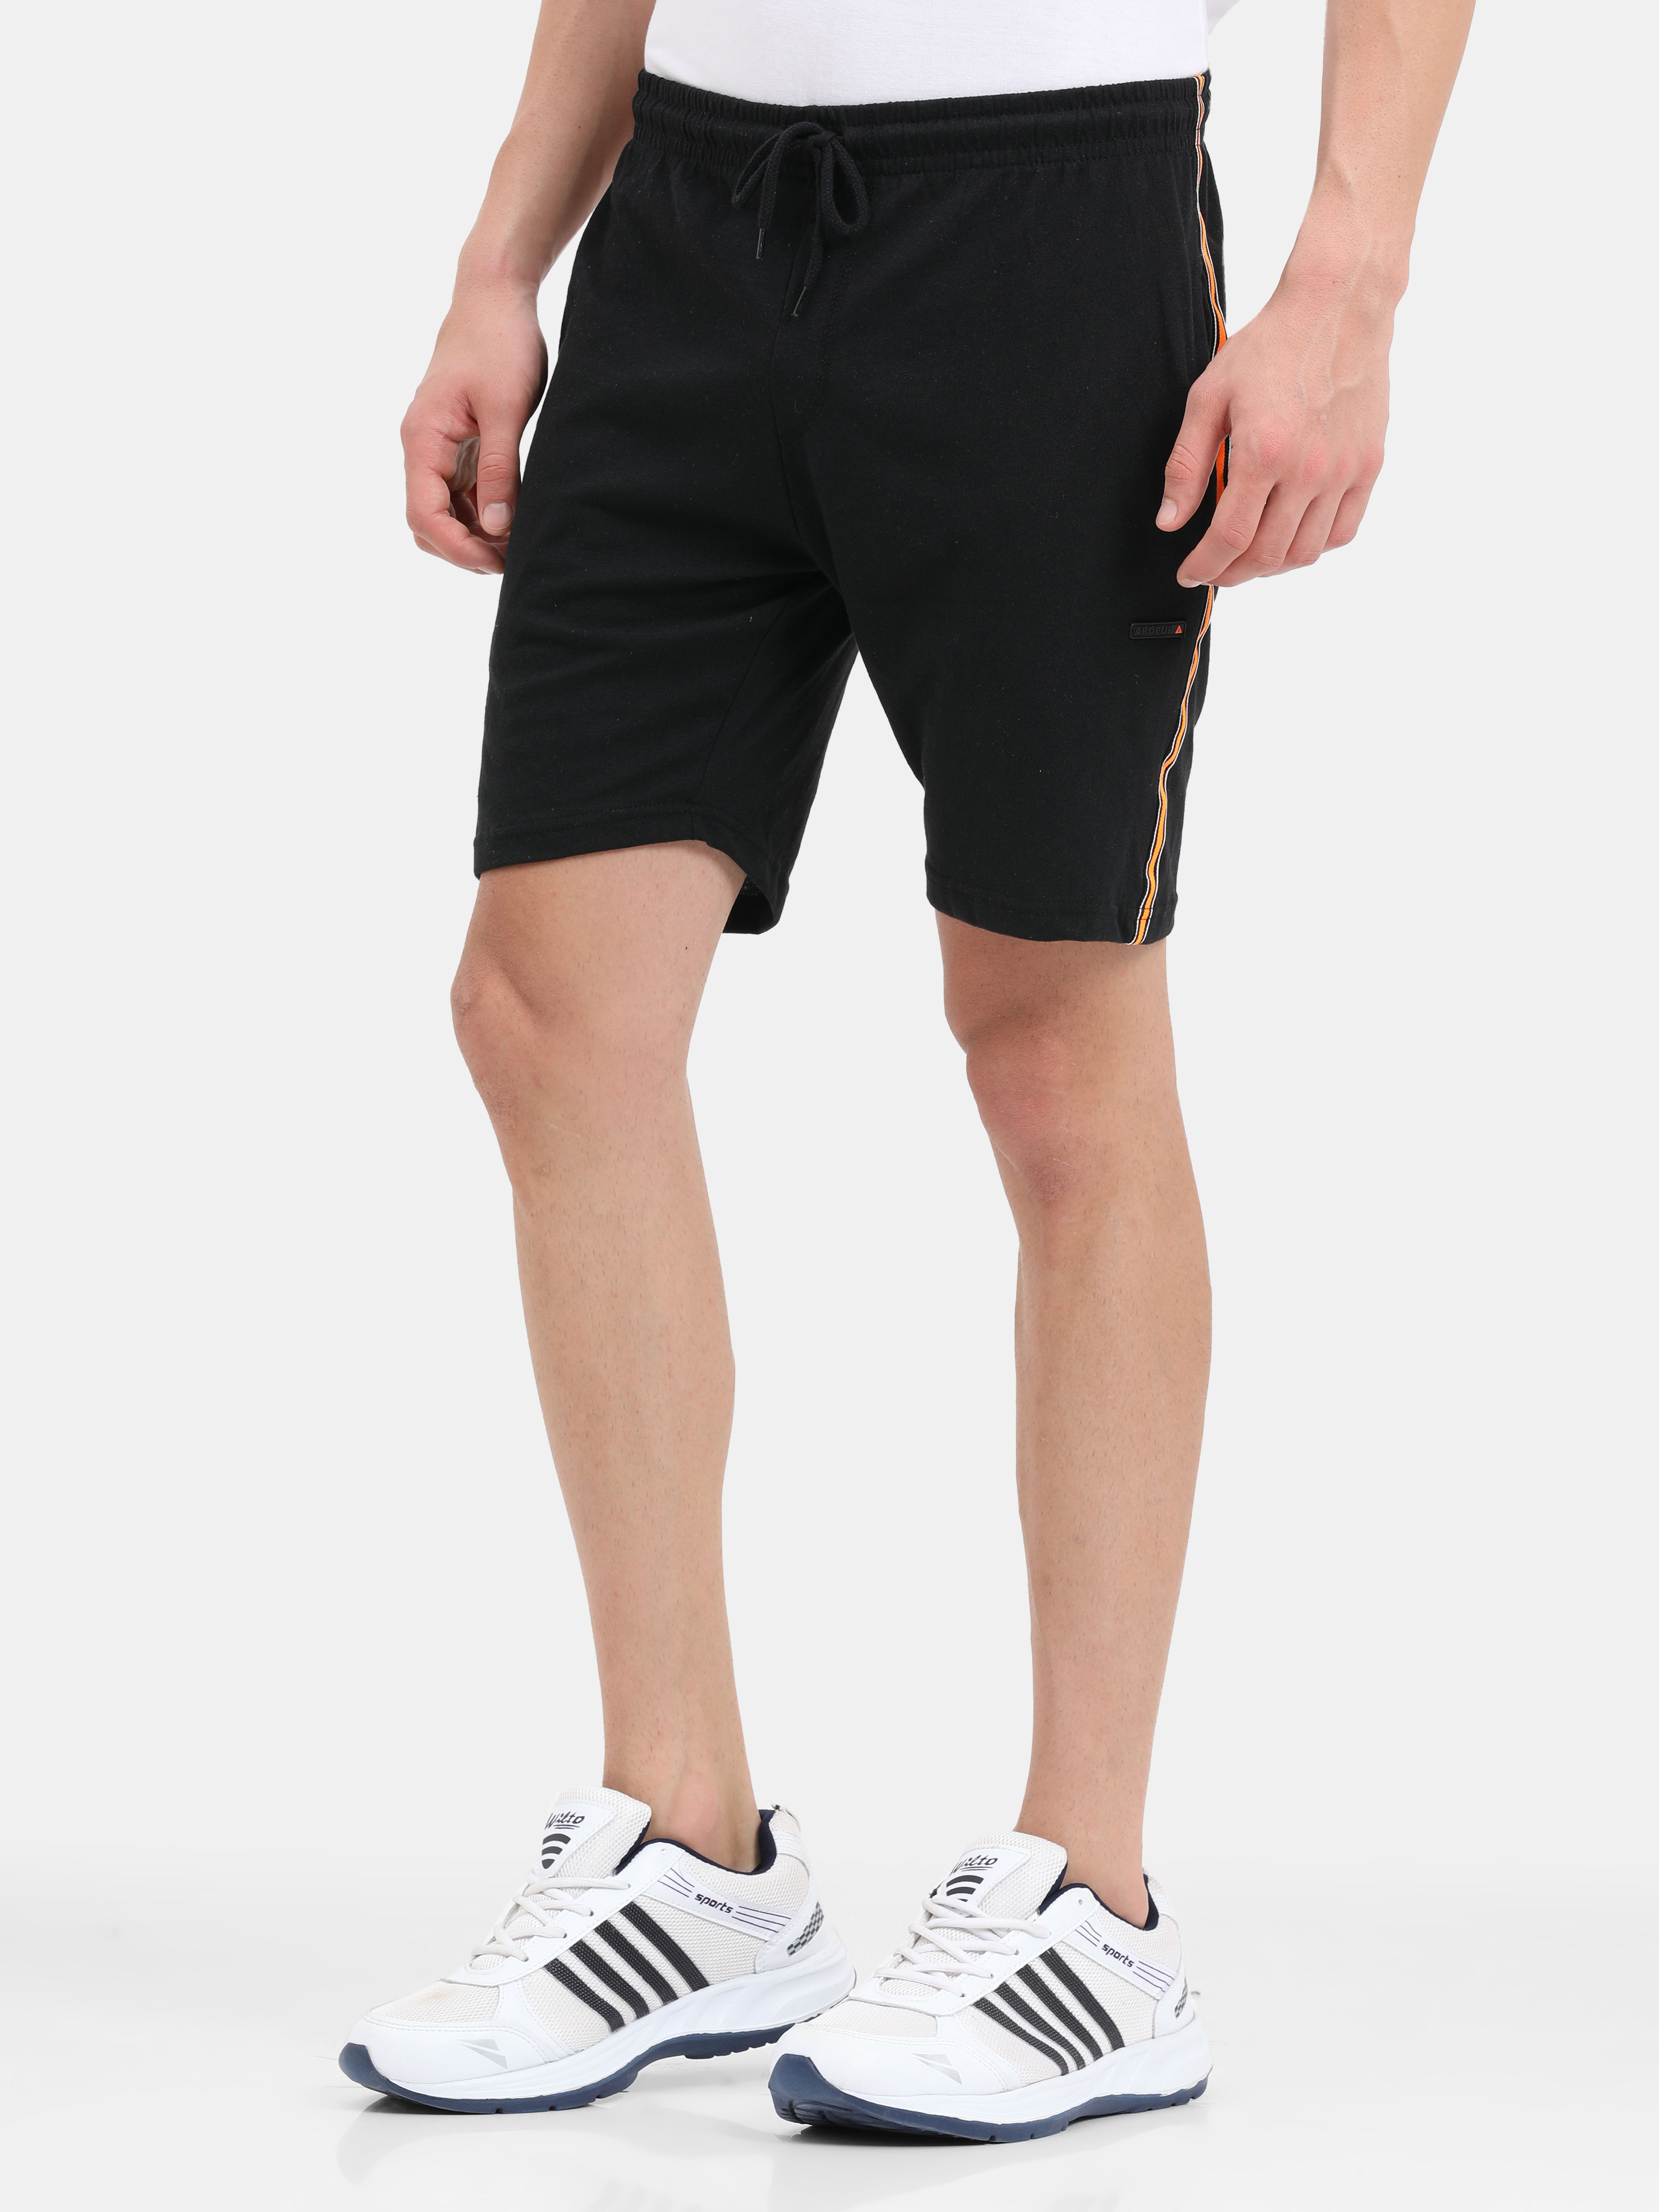     			Ardeur - Black Cotton Blend Men's Shorts ( Pack of 1 )